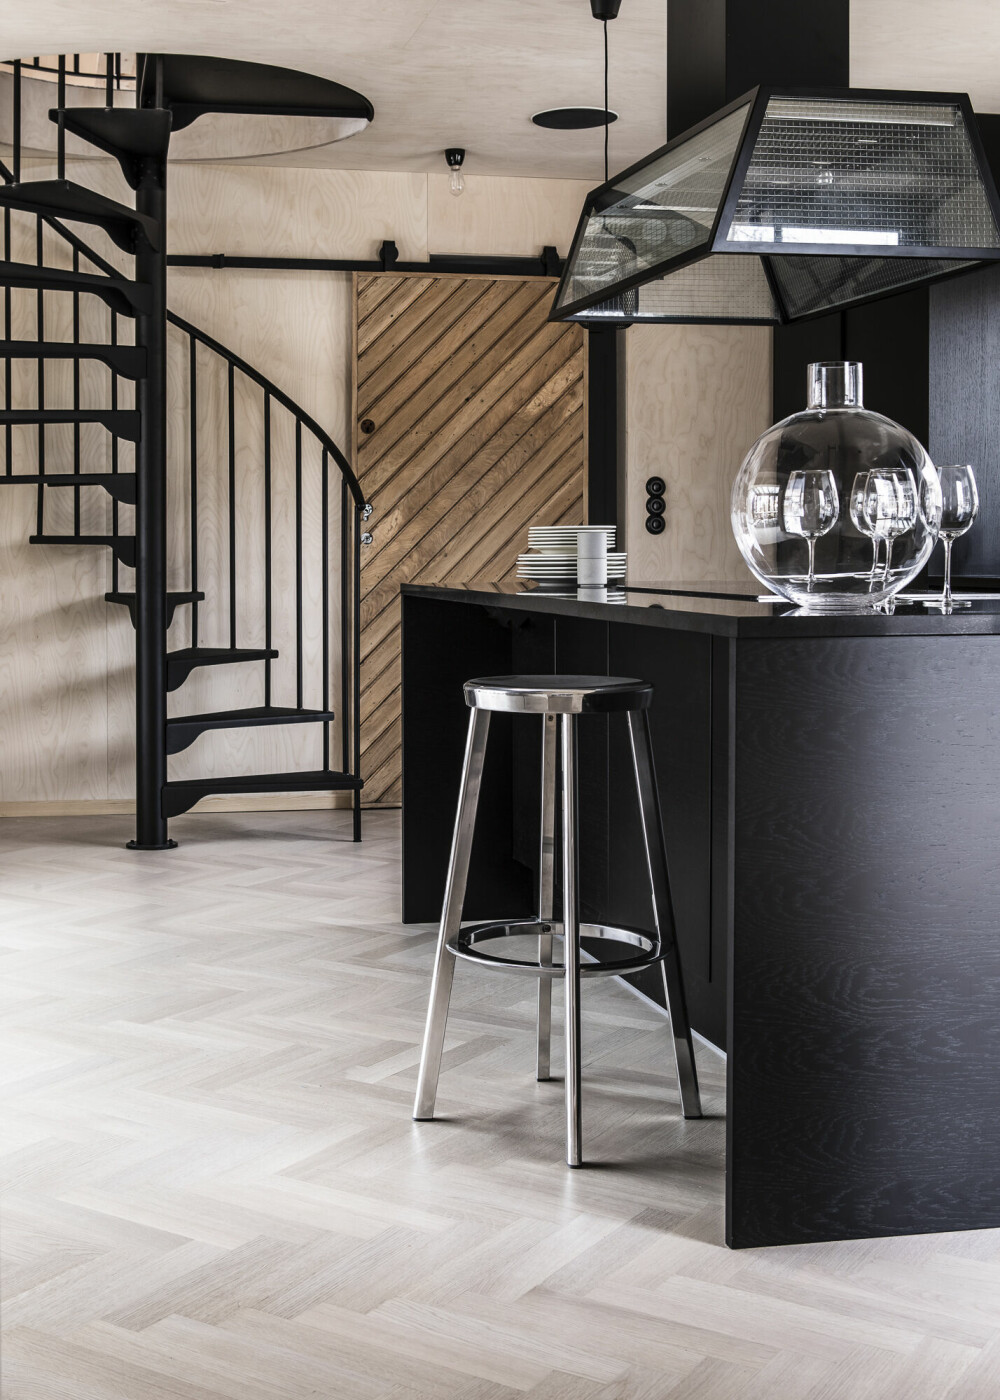 Den fritthengende kjøkkenviften Prisma inviterer til rustikk industristil og er en god match med det stilrene HTH-kjøkkenet Nordic Spirit. B 80/100/120 x d 60 cm, fra kr 30 985, Fjäråskupan.